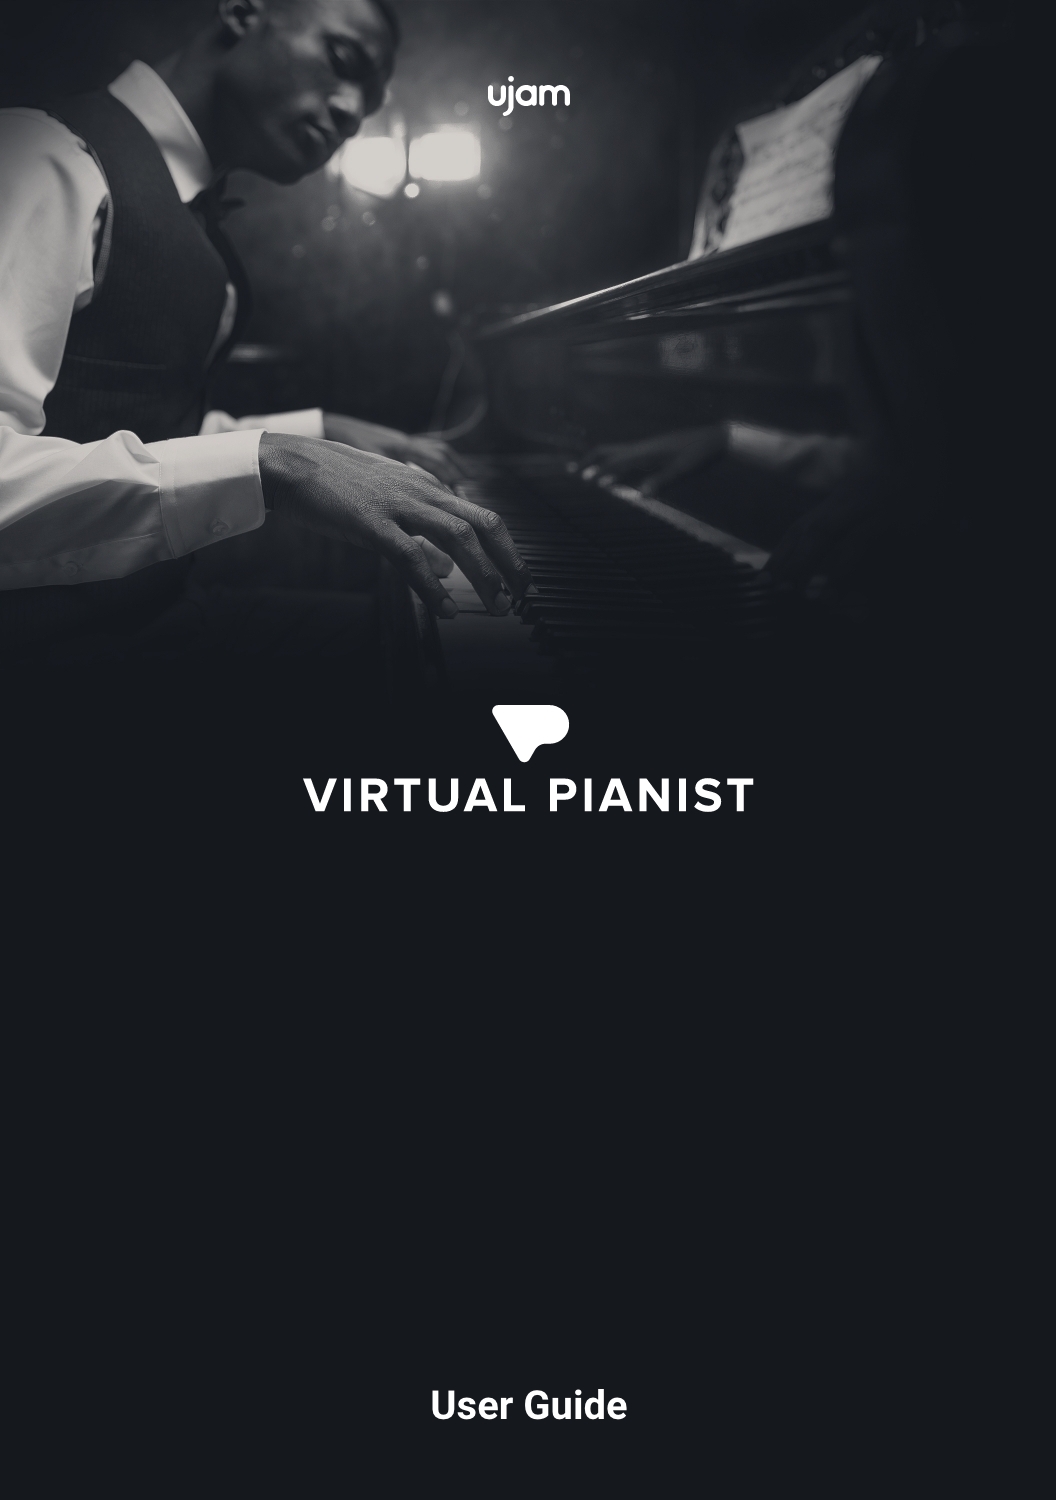 R&B Music Sheets, Online Keyboard at Virtual Piano